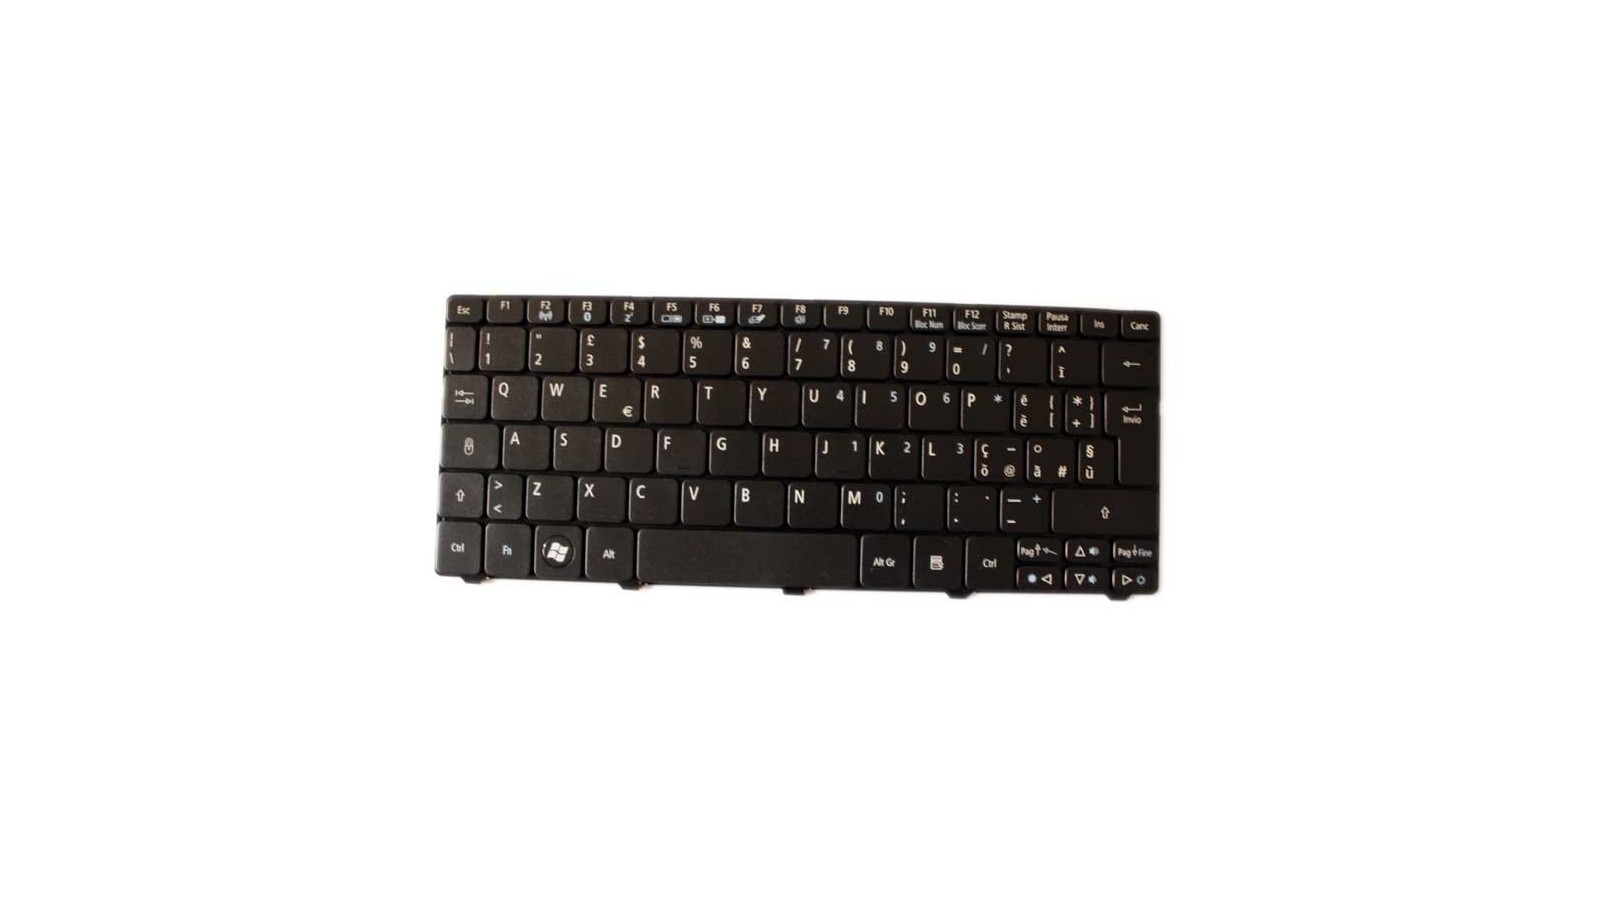 Tastiera nera italiana per notebook compatibile con Gateway LT21